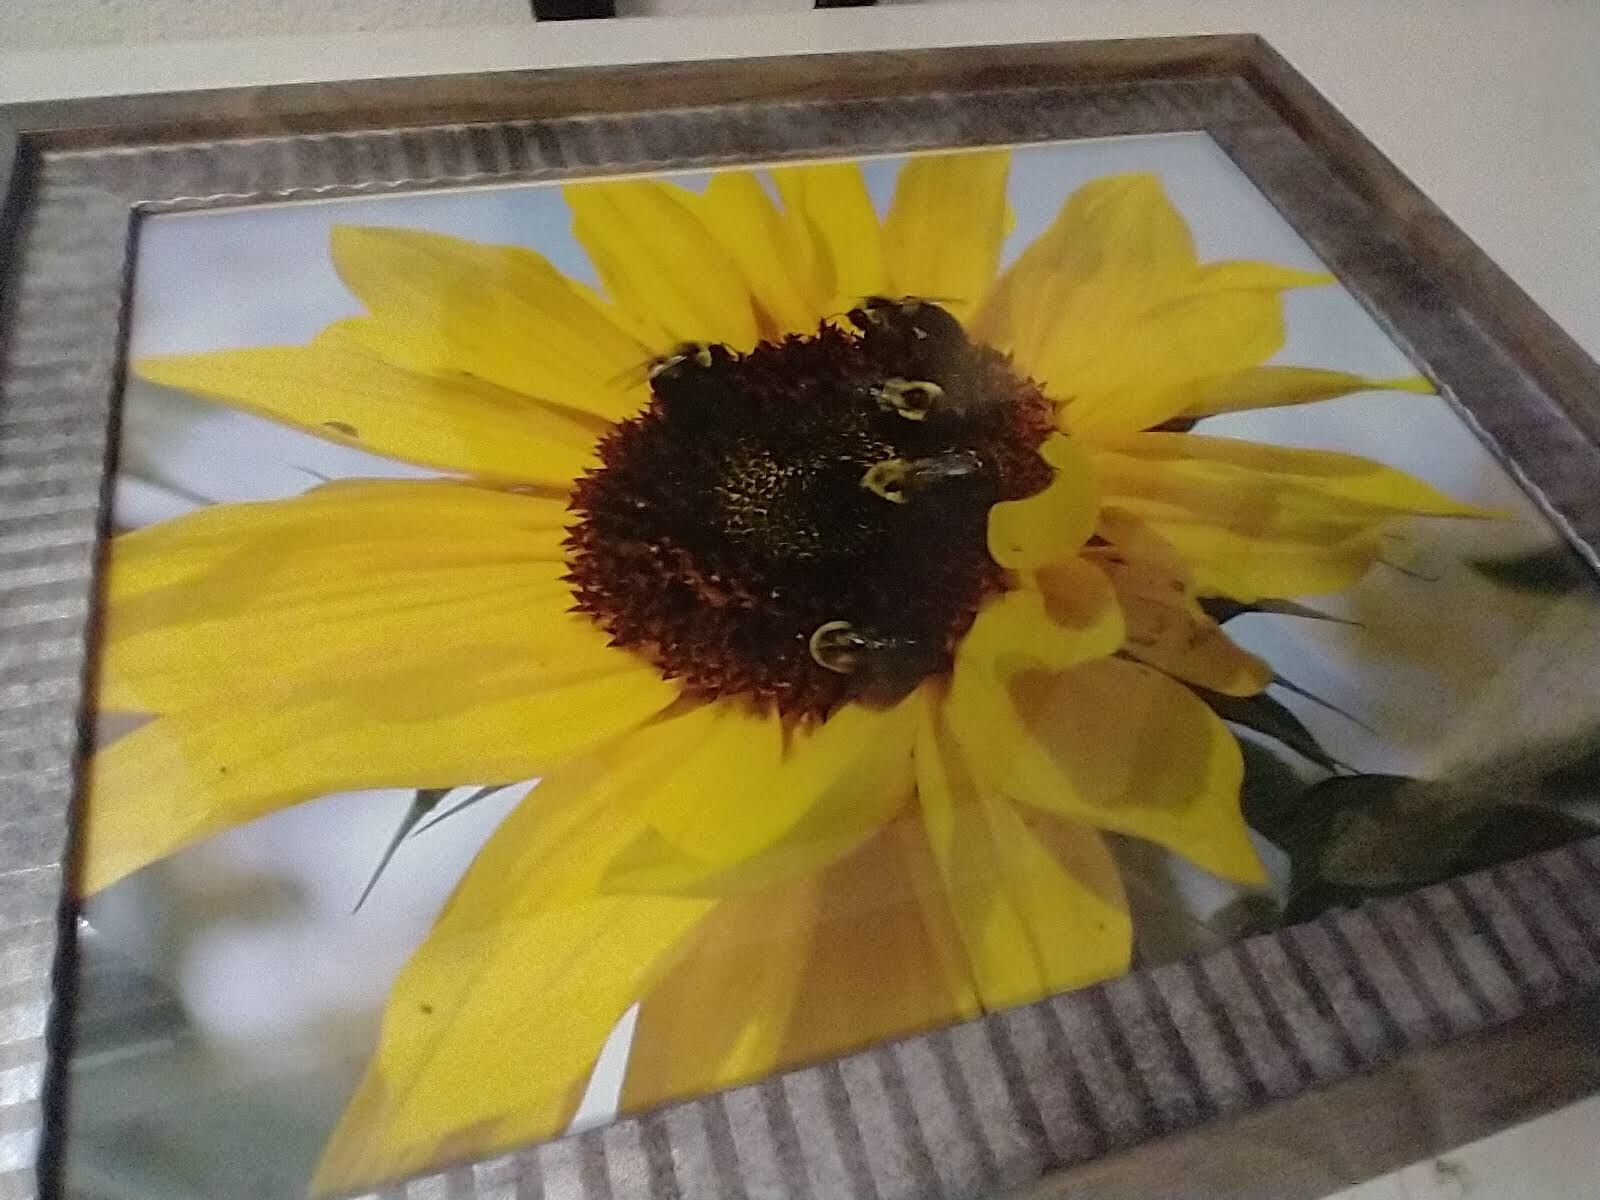 Sunflower Picture Framed Decor